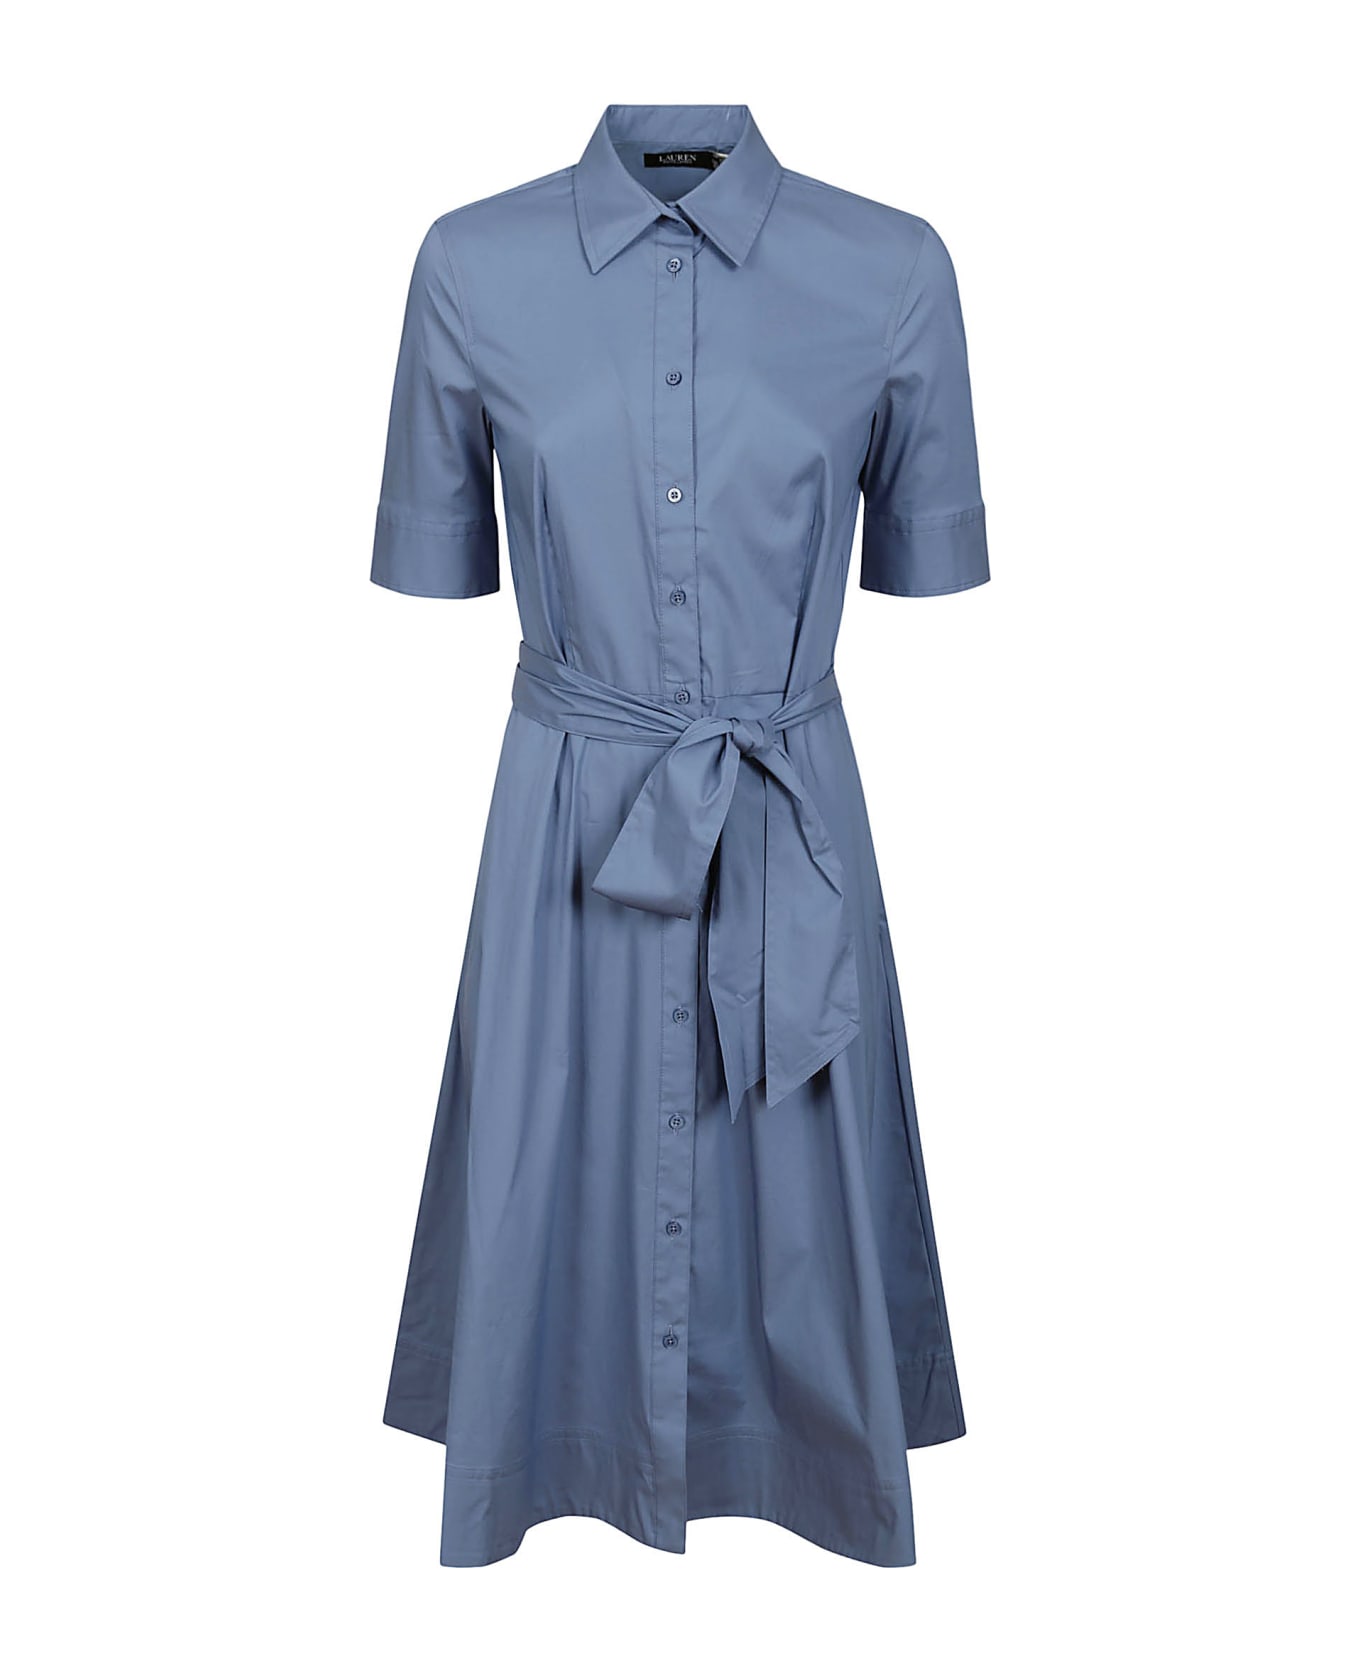 Ralph Lauren Finnbarr Short Sleeve Casual Dress - Pale Azure